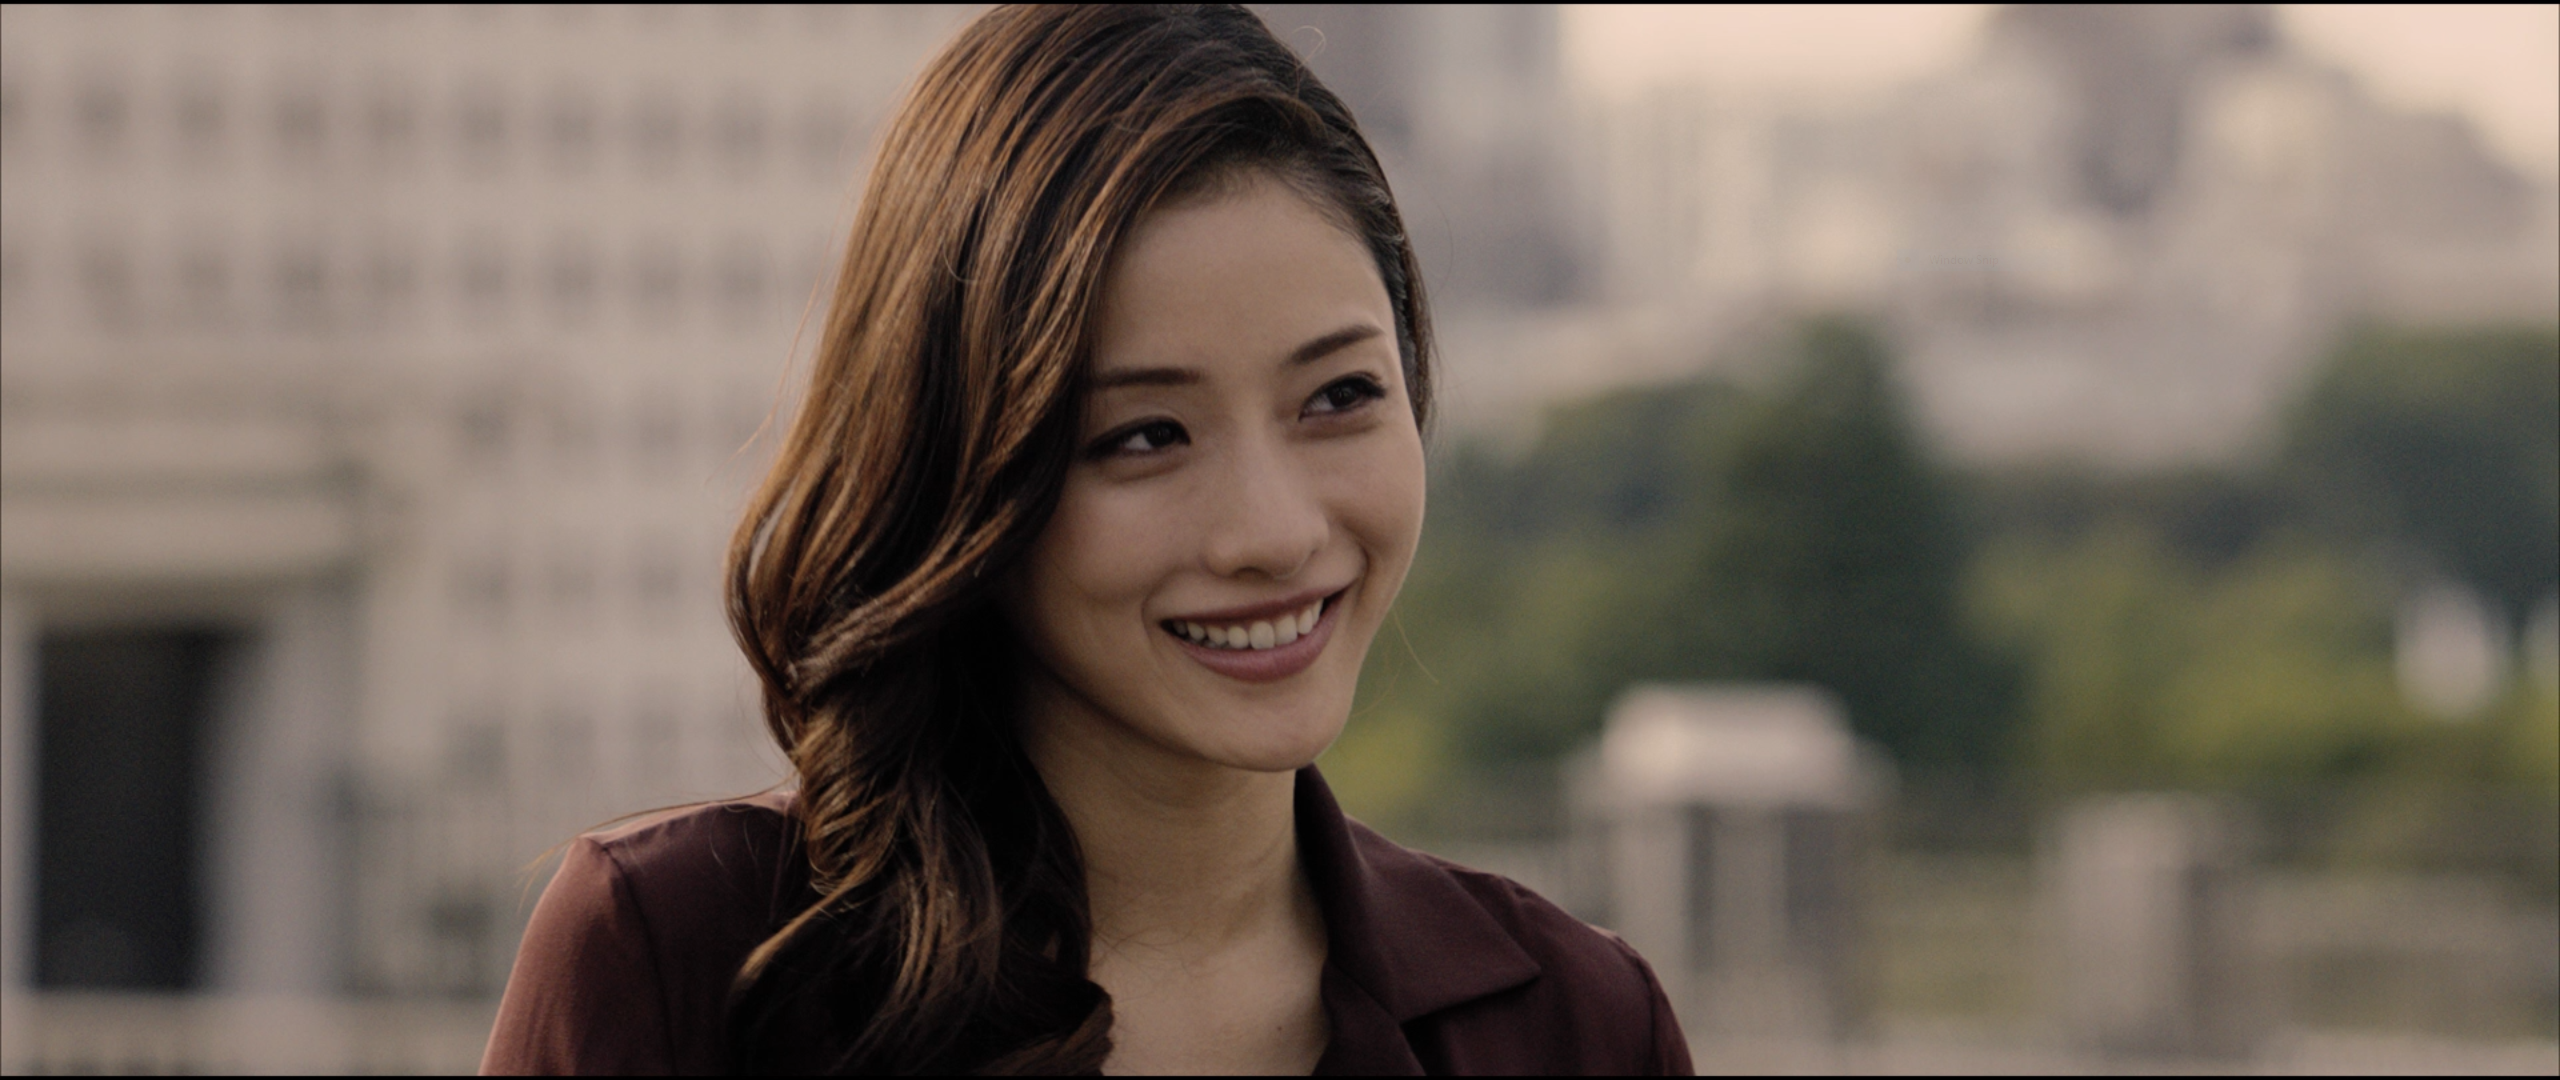 Satomi Ishihara Shin Godzilla Asian Celebrity Women Face Smiling Women Outdoors 2560x1080